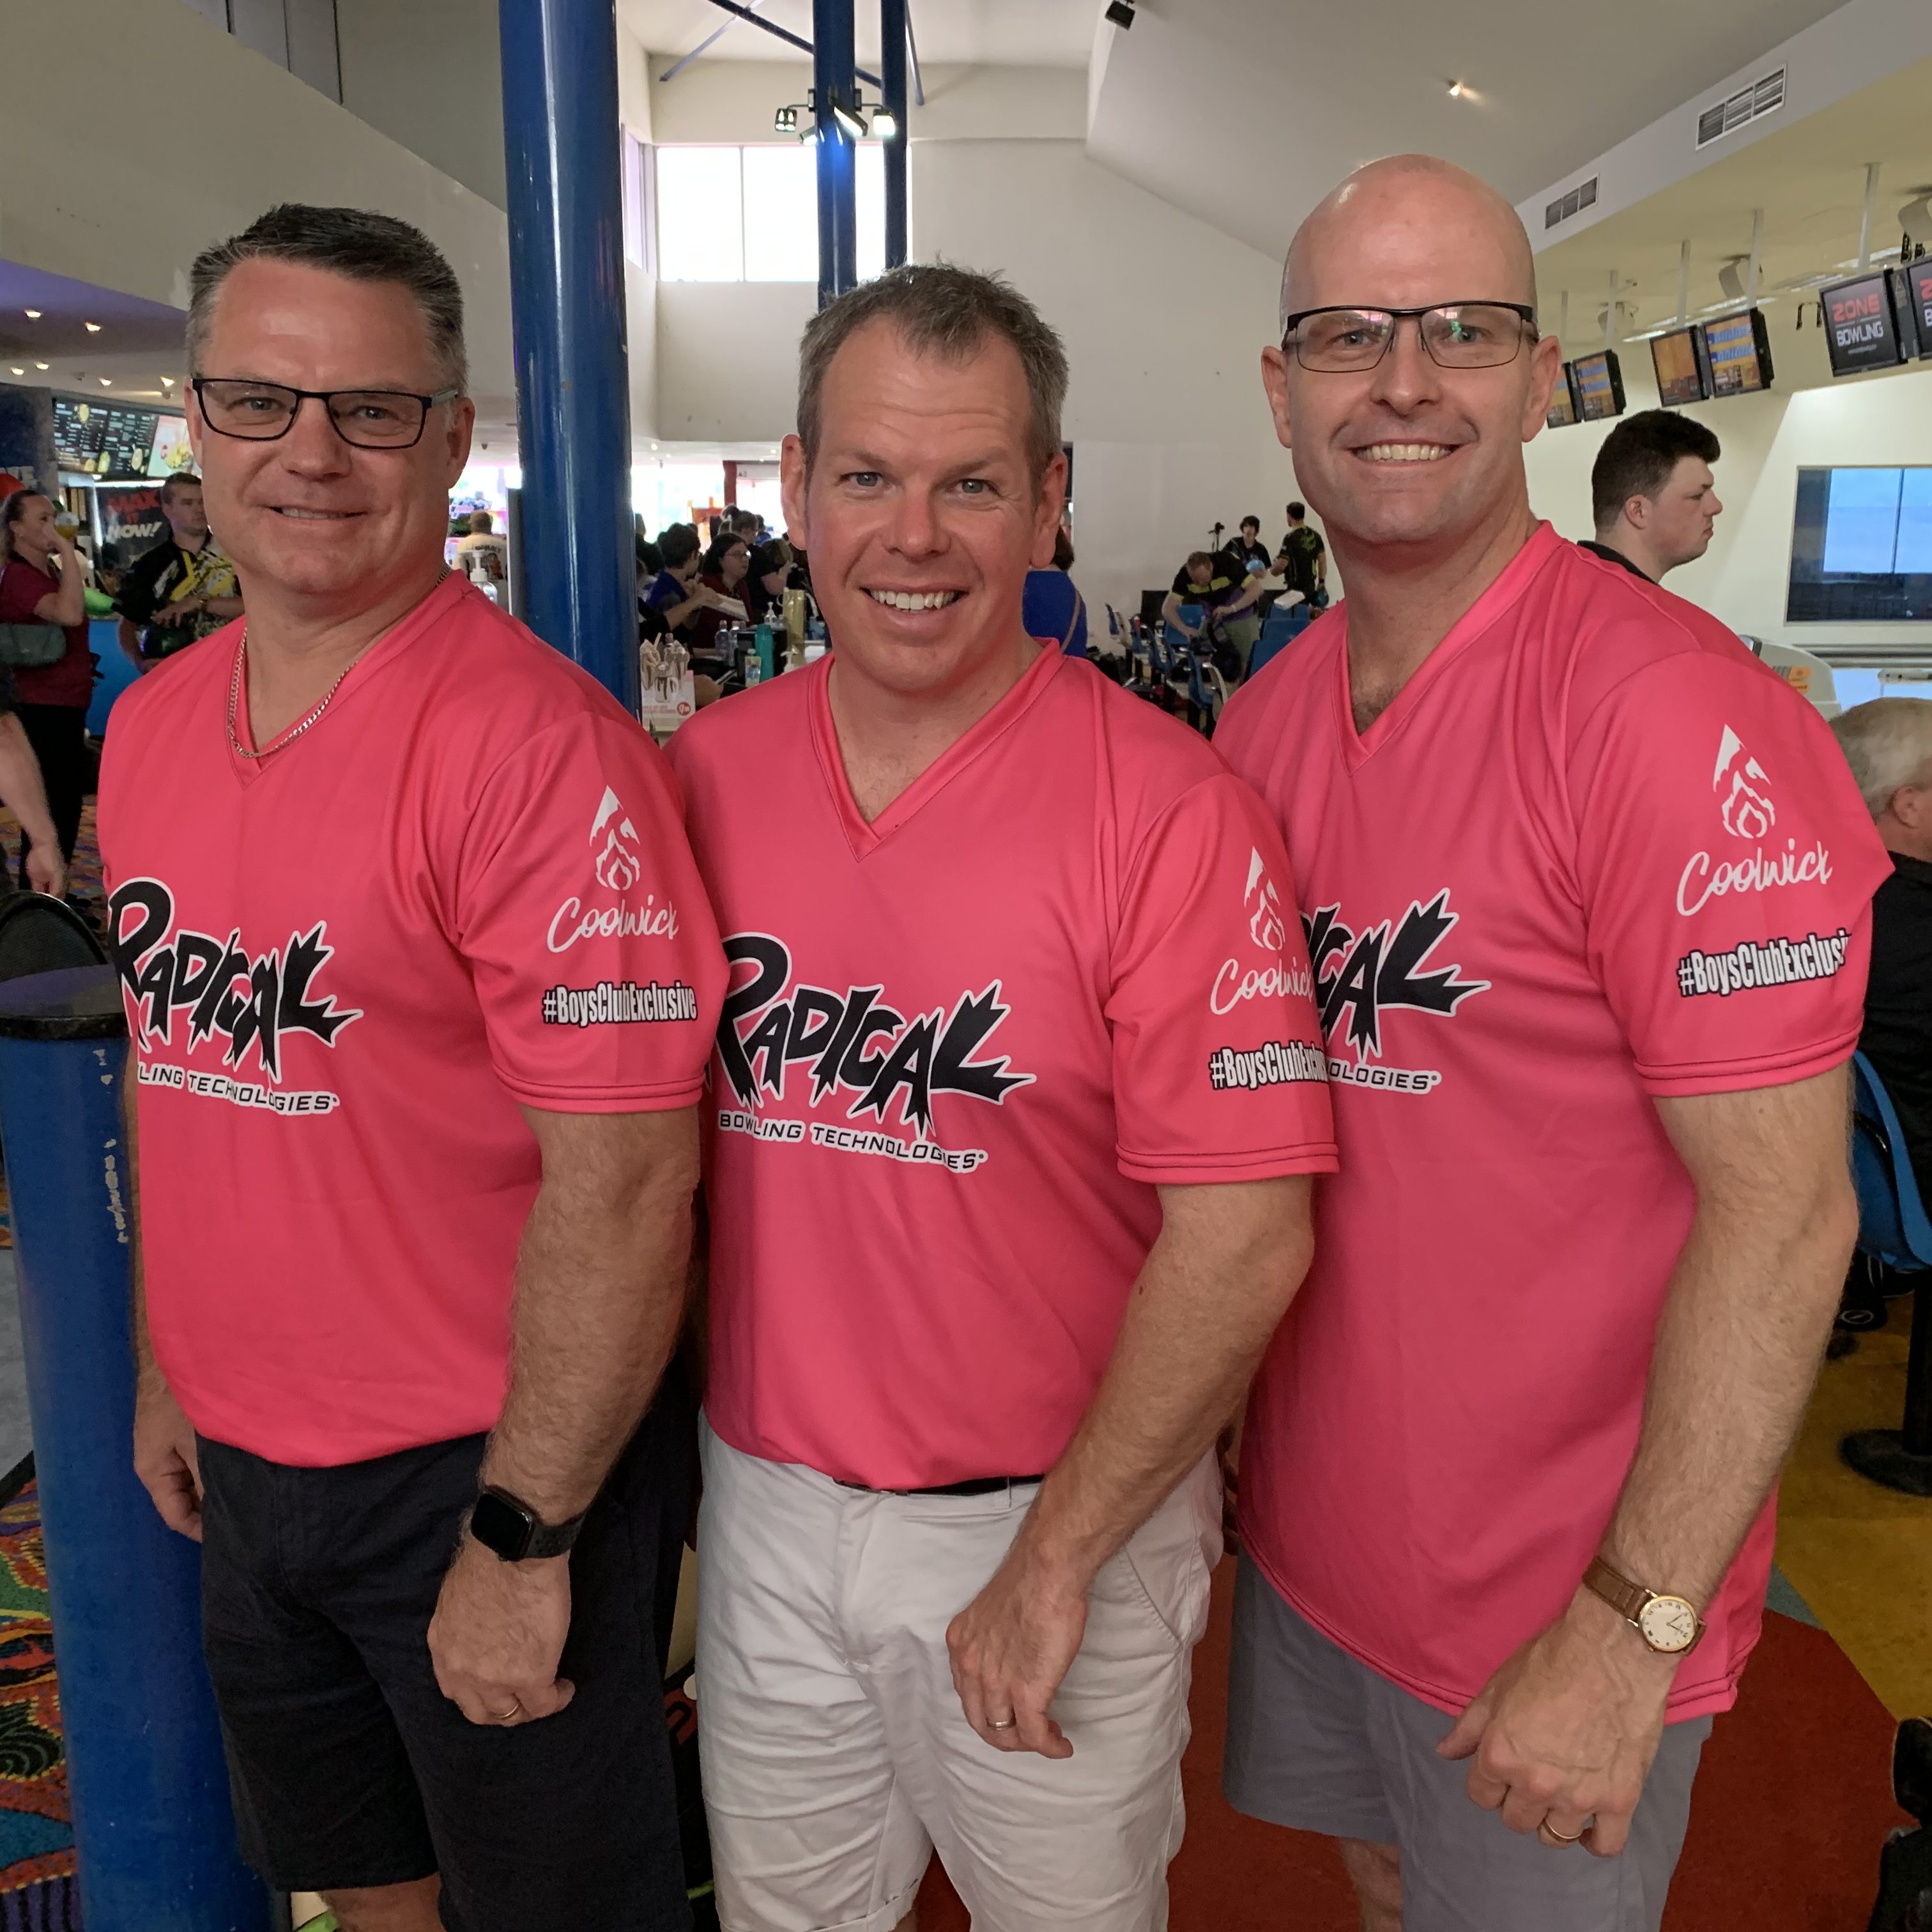 3 men in pink shirts smiling